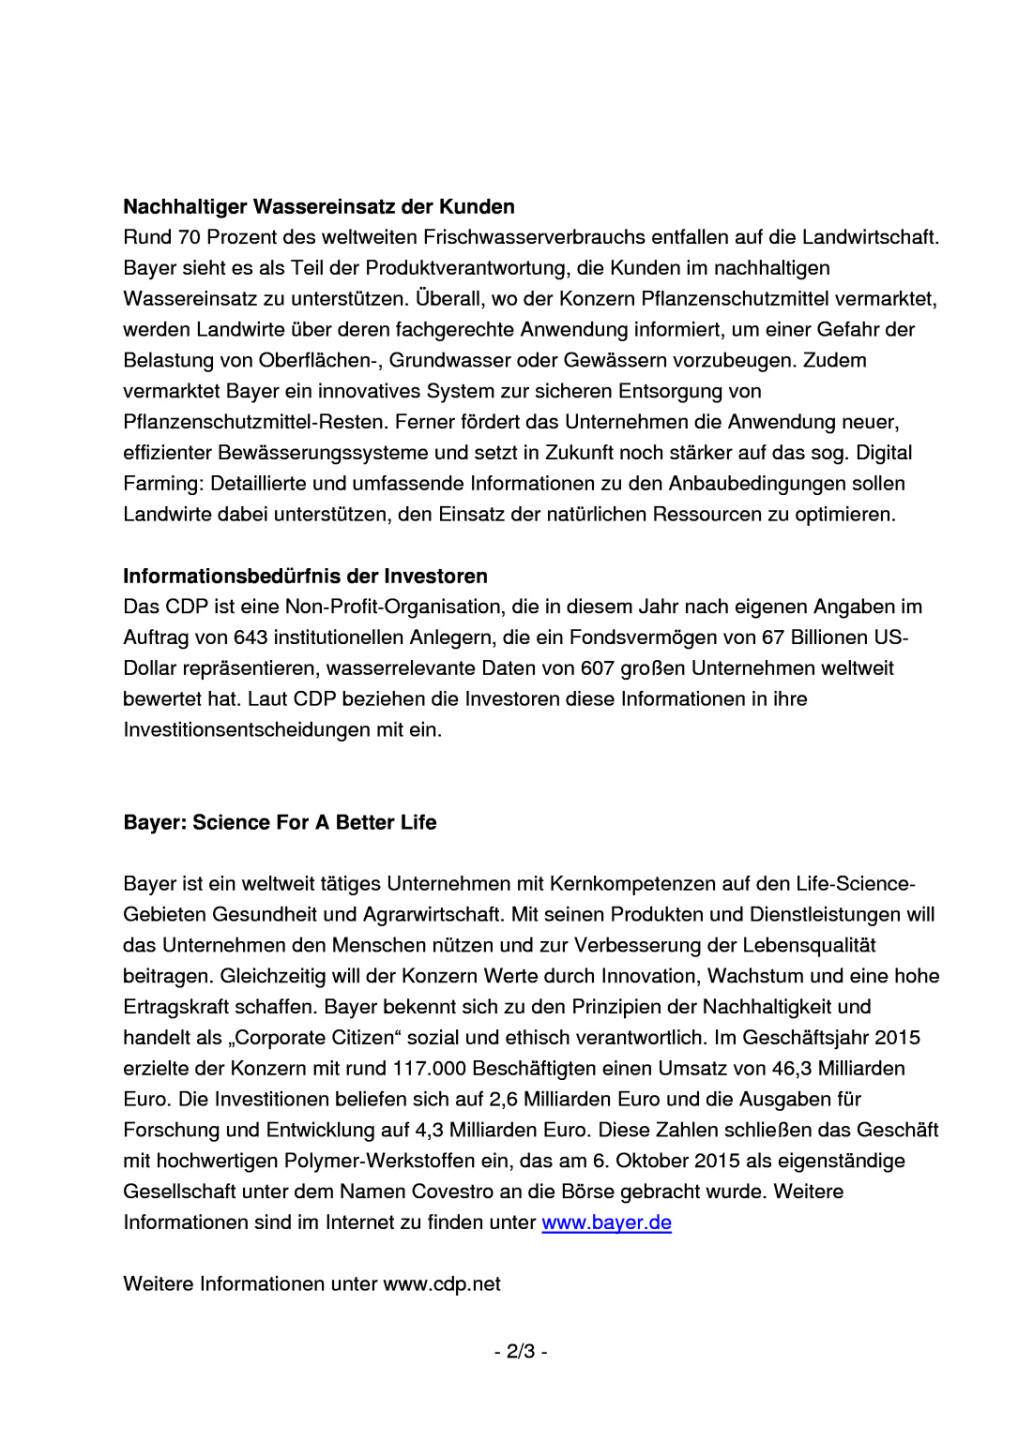 Bayer bei nachhaltigem Wassermanagement international führend , Seite 2/3, komplettes Dokument unter http://boerse-social.com/static/uploads/file_1979_bayer_bei_nachhaltigem_wassermanagement_international_fuehrend.pdf